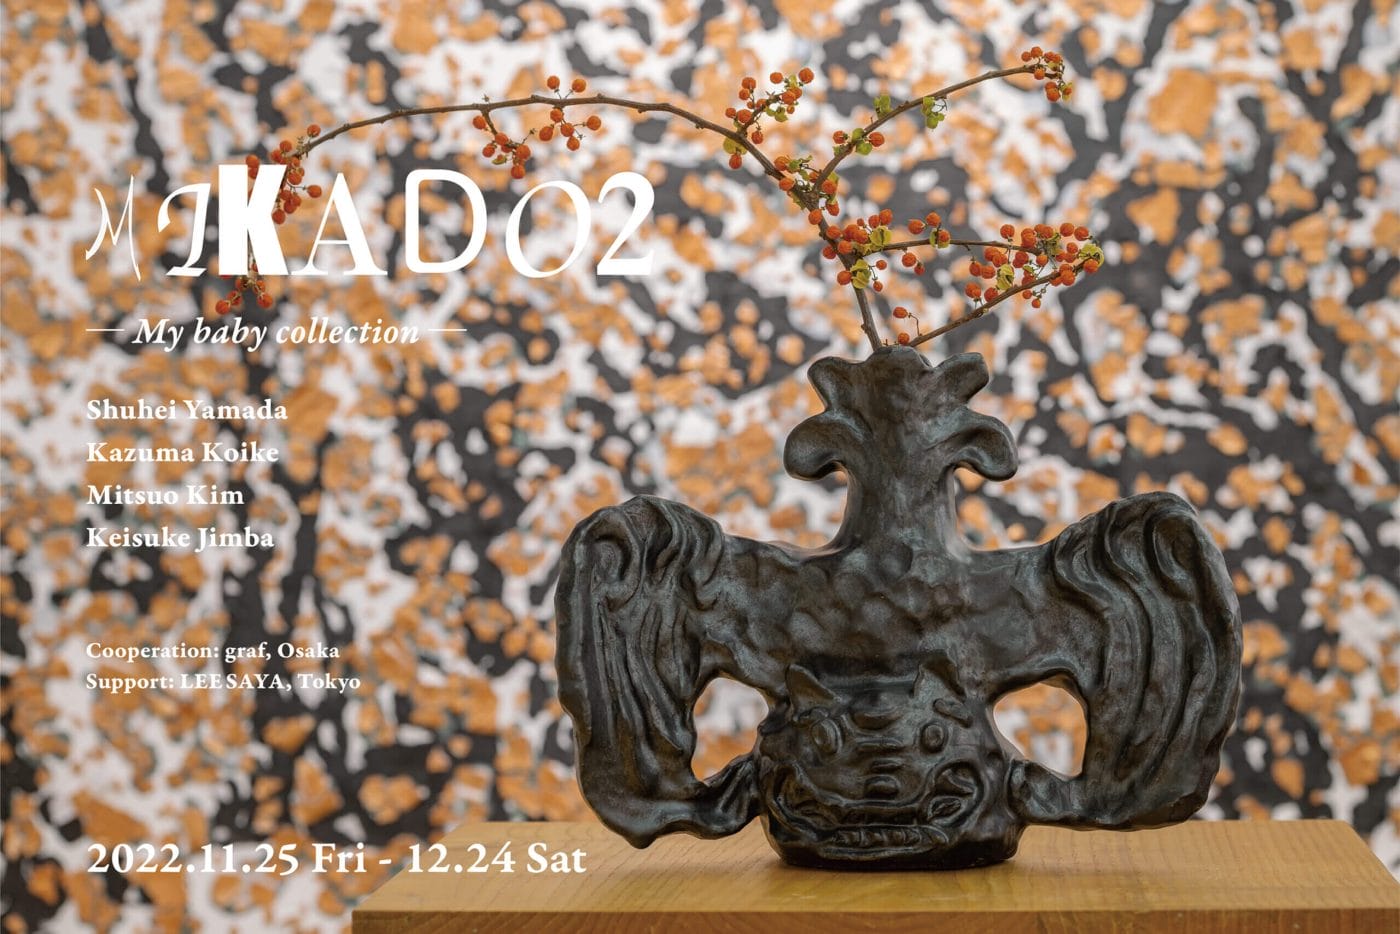 4人のアーティストが、”コレクターの不在 “をテーマに展覧会を開催。グループ展「MIKADO2 – My baby collection」、TEZUKAYAMA GALLERYにて。